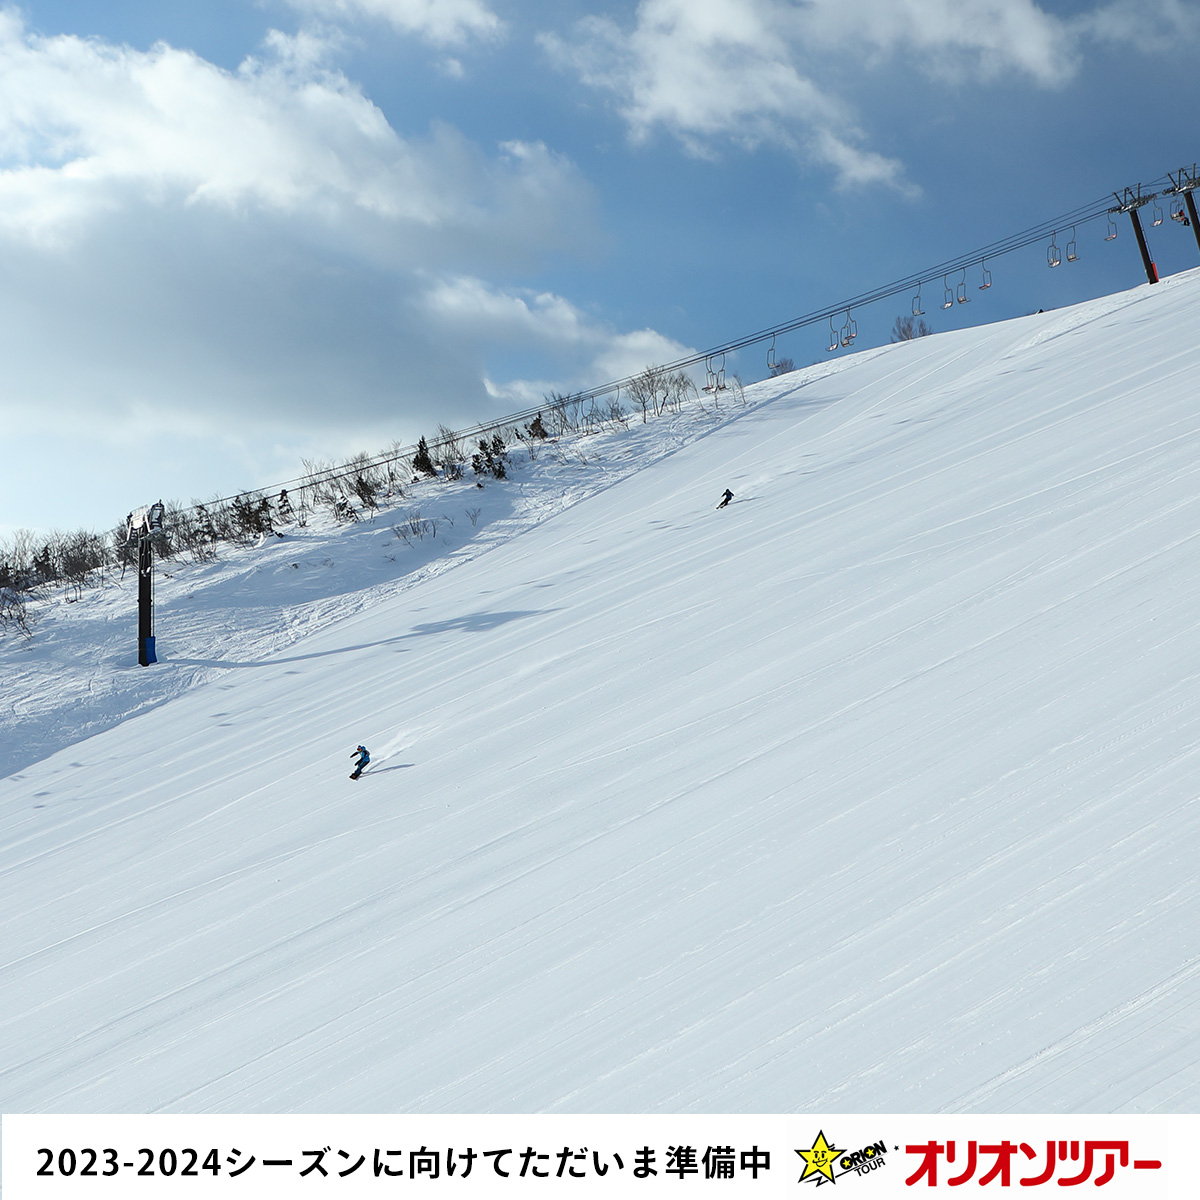 【 #SKI & #SNOWBOARD 】
2023-2024シーズン向けてただいま準備中🏂
スノーボード＆スキーツアーをもっと楽しむ冬へ！
旅行会社オリオンツアーをお見逃しなくッ✨
▸orion-ski.jp